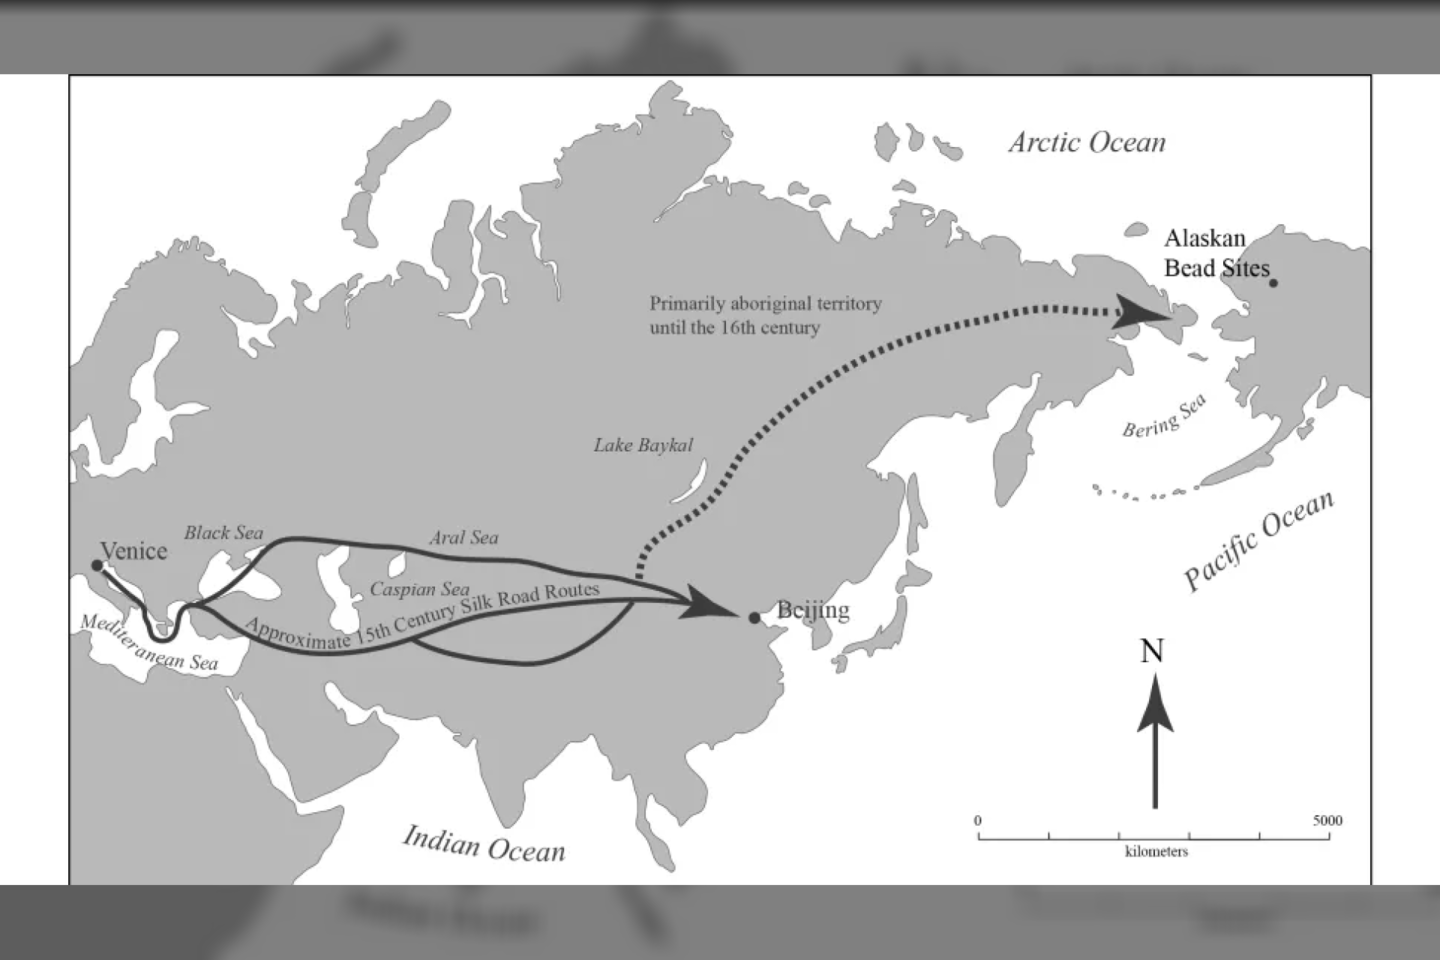  Nežinoma, kaip karoliukai tiksliai pateko iš Europos į Aliaską, tačiau čia pažymėti galimi maršrutai.<br> Boreal Imagery iliustr.